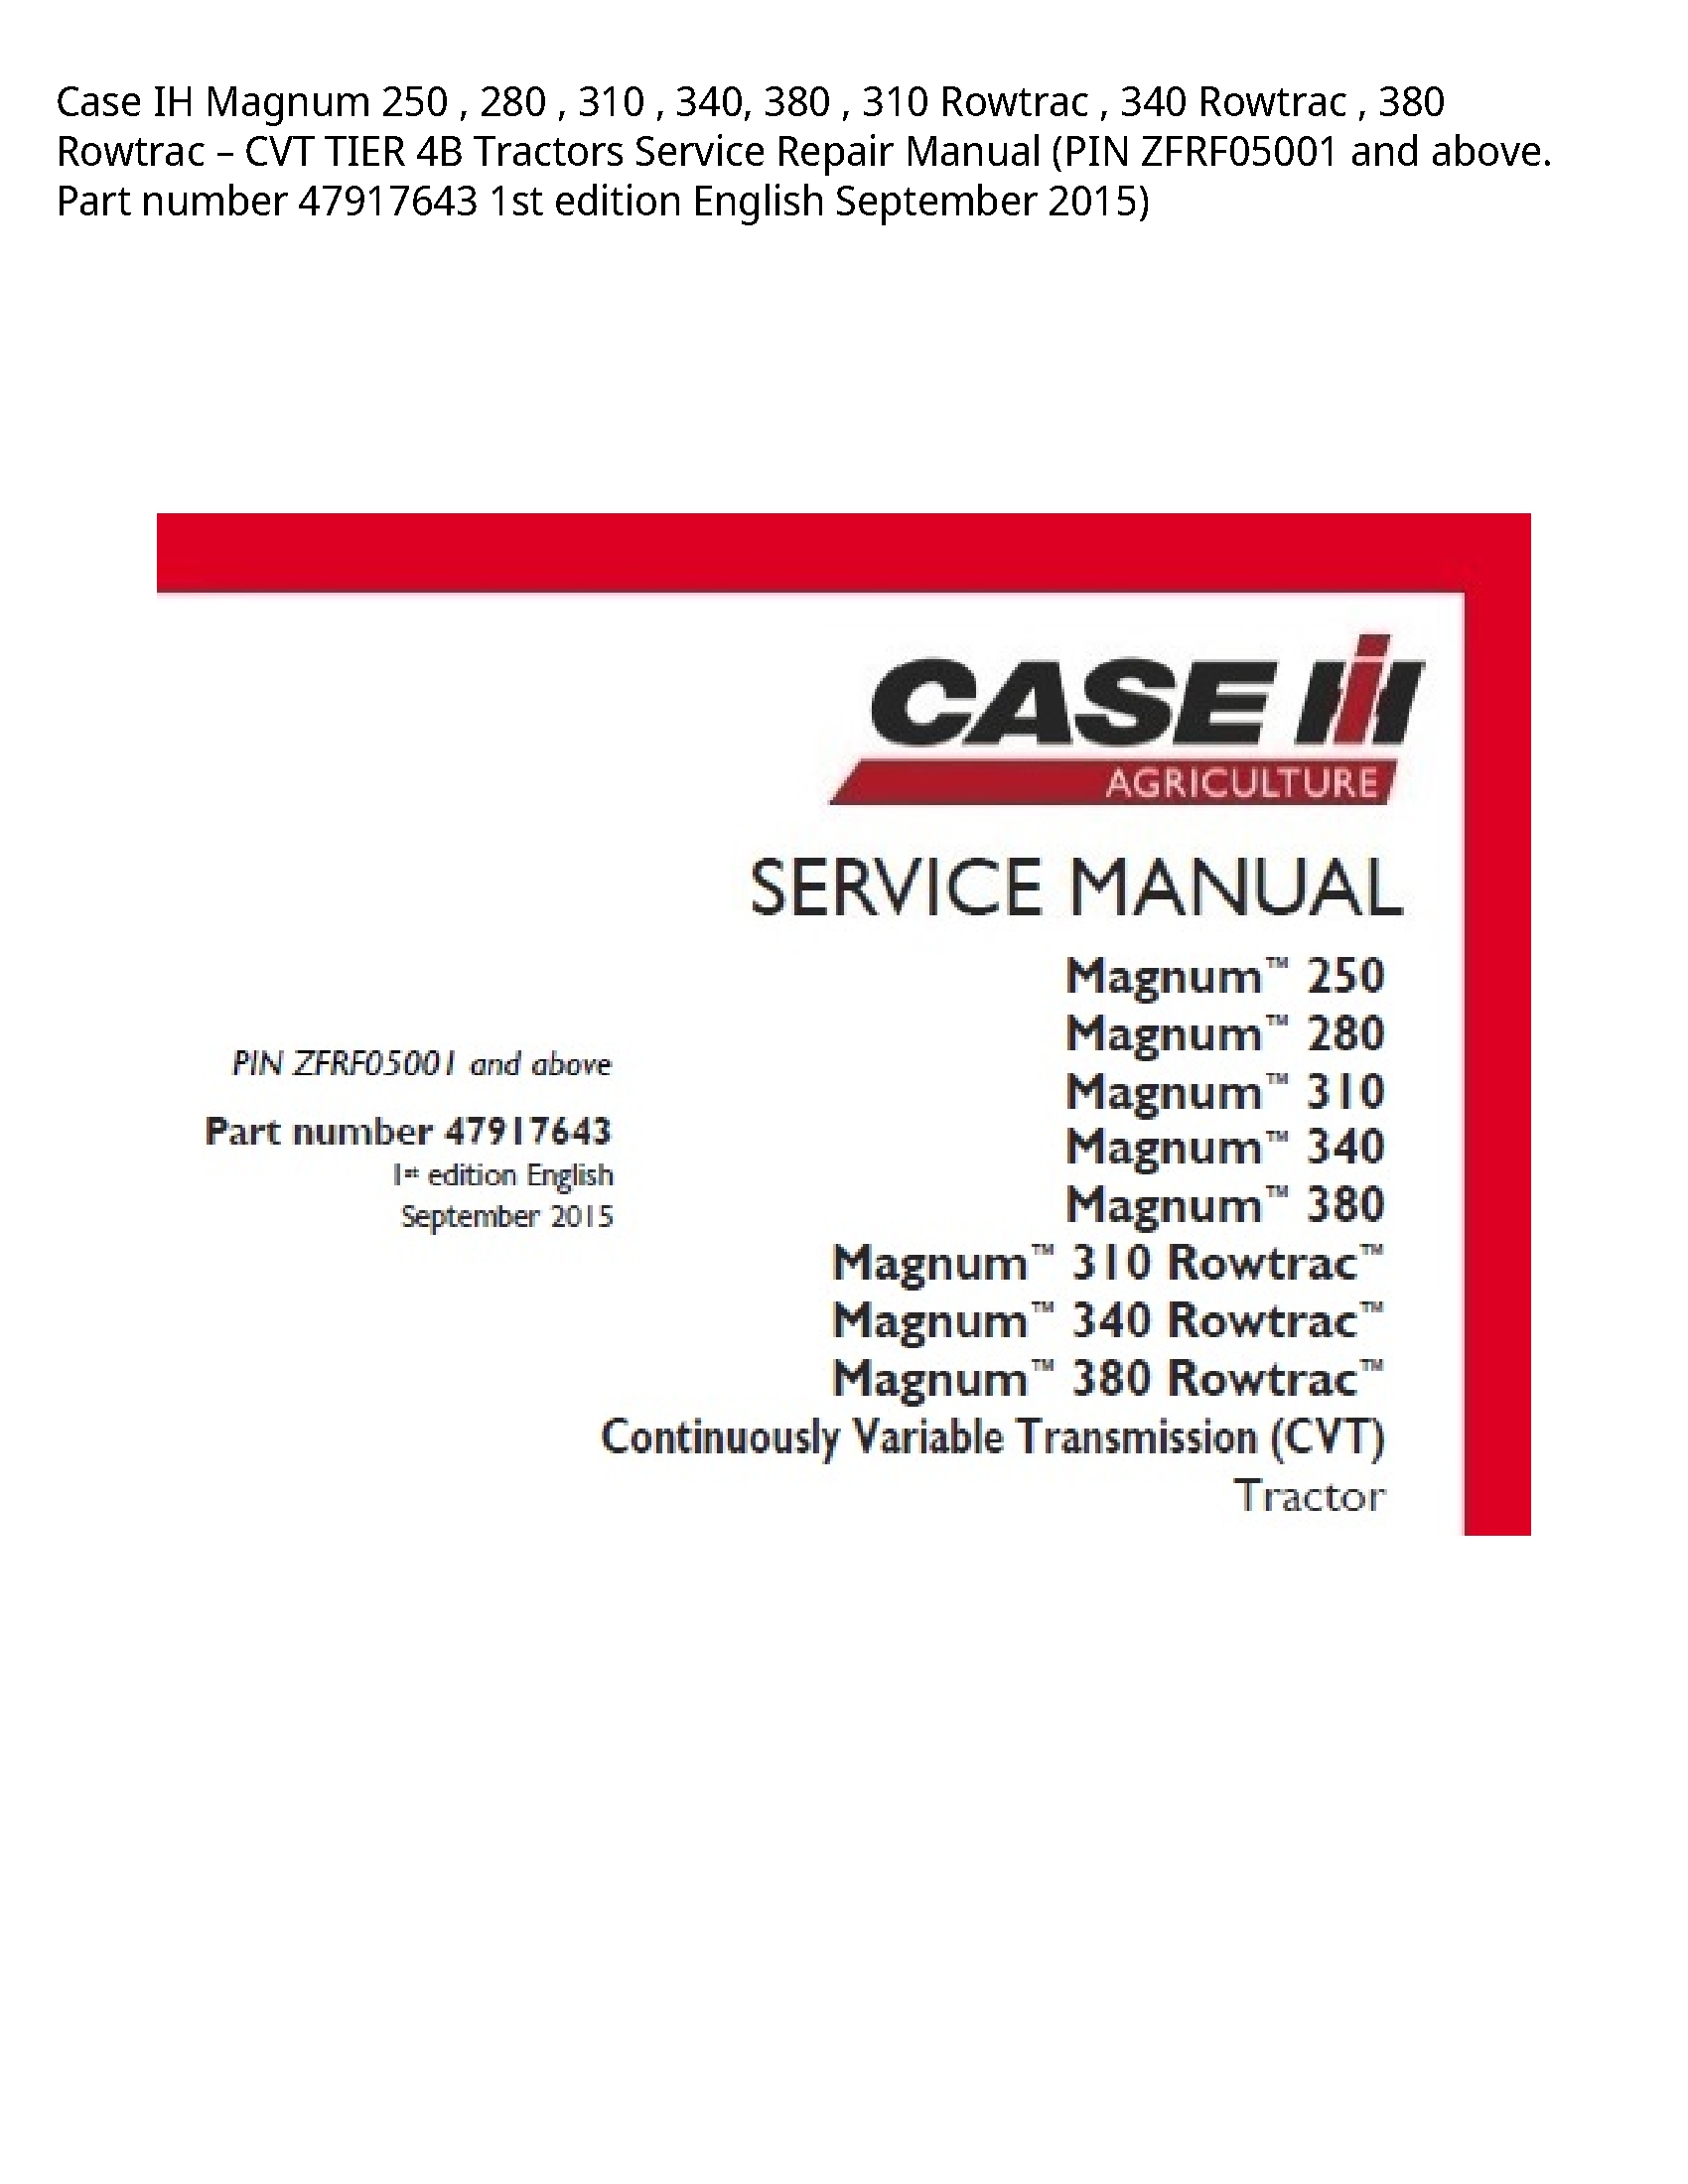 Case/Case IH 250 IH Magnum Rowtrac Rowtrac Rowtrac CVT TIER Tractors manual